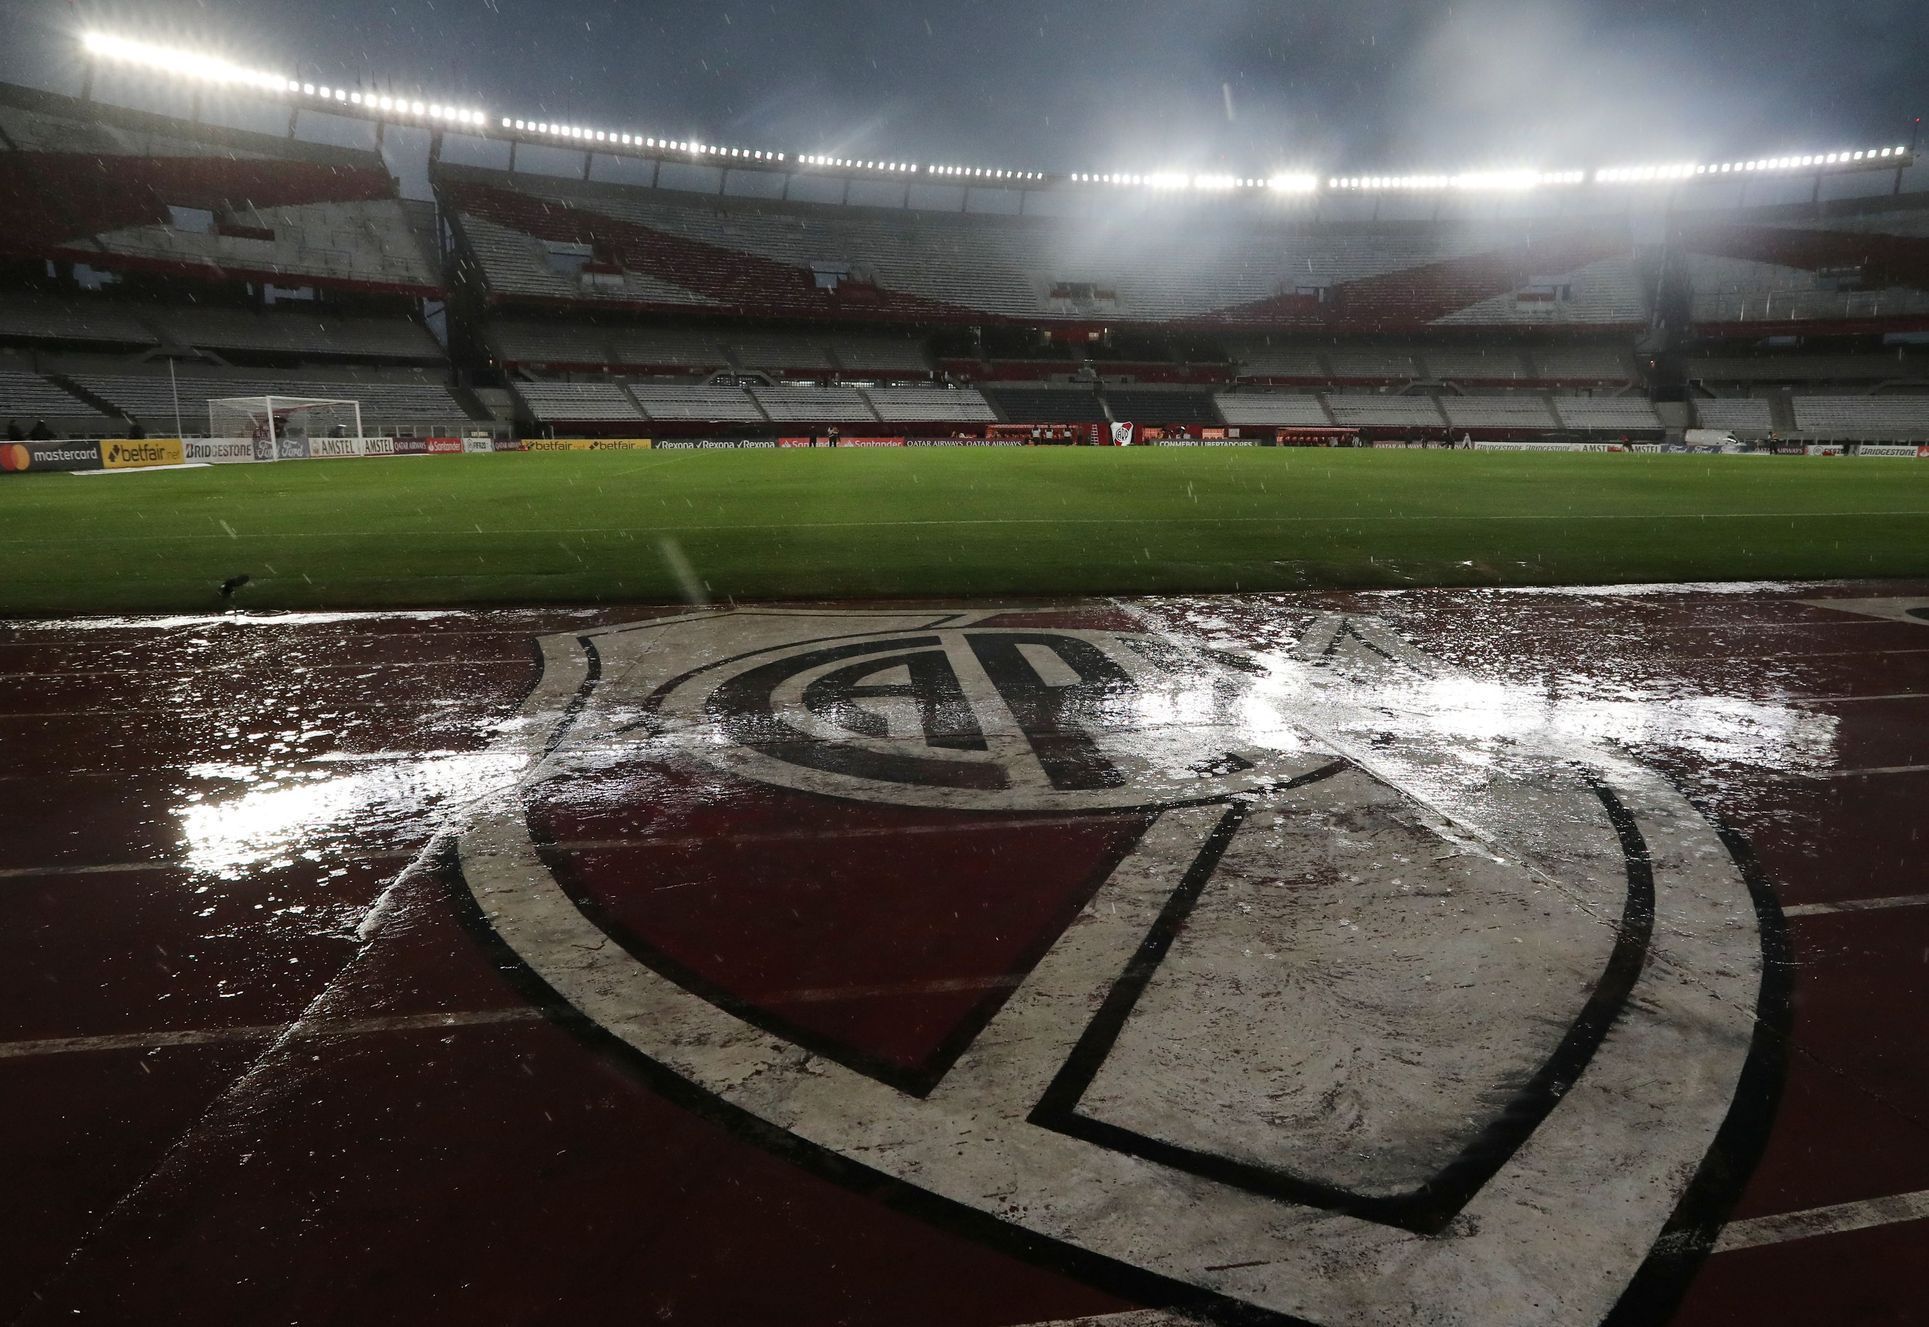 Copa Libertadores - Group D - River Plate v Binacional